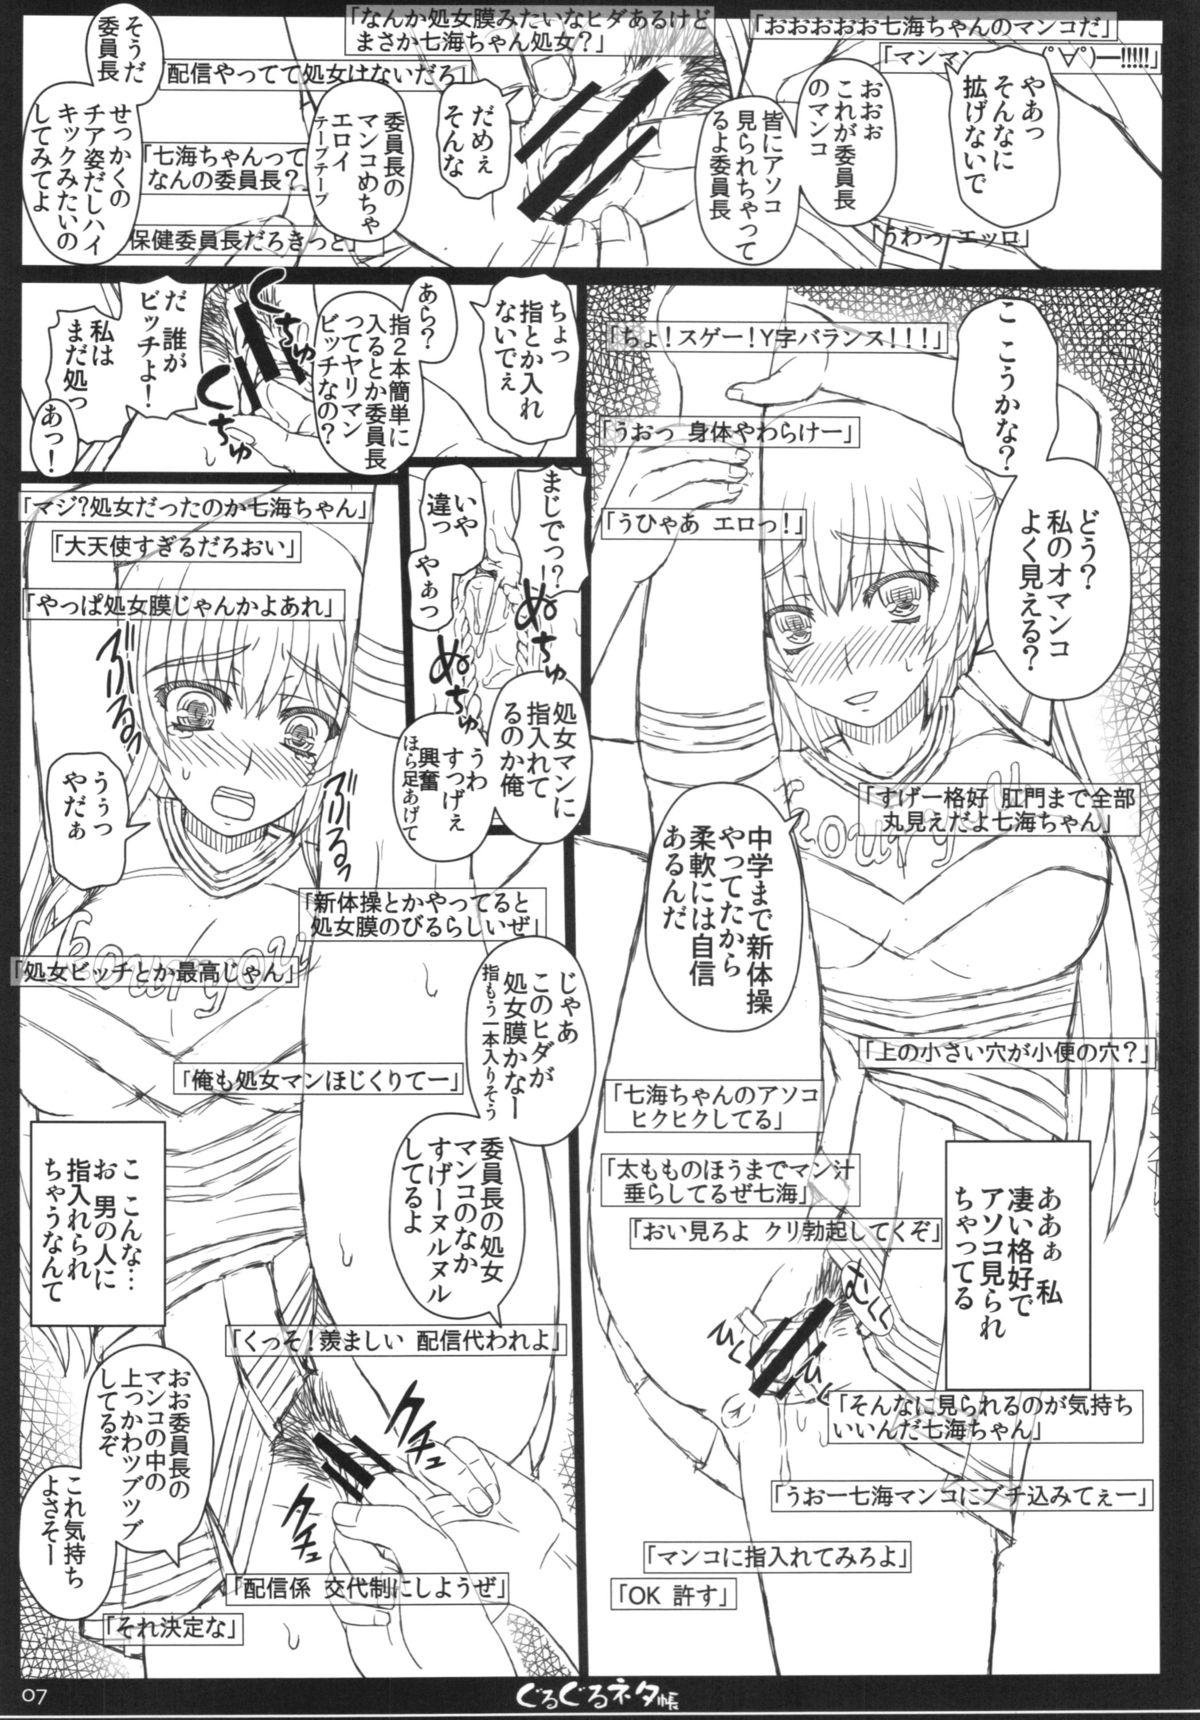 Cornudo Shiawase no Katachi no Guruguru Netachou 84 Online - Page 7